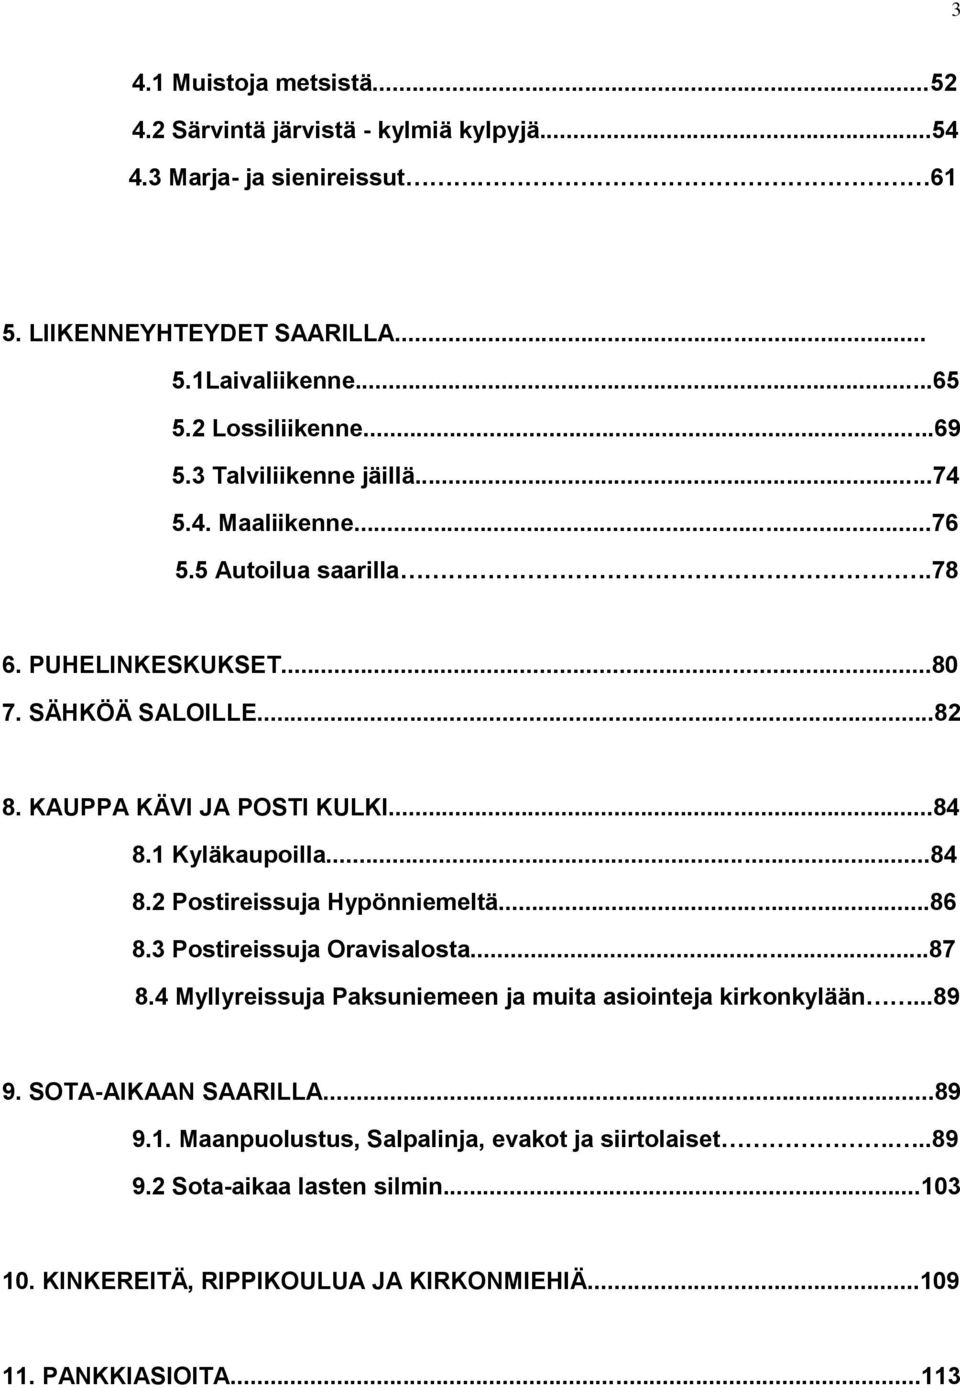 1 Kyläkaupoilla...84 8.2 Postireissuja Hypönniemeltä...86 8.3 Postireissuja Oravisalosta...87 8.4 Myllyreissuja Paksuniemeen ja muita asiointeja kirkonkylään...89 9.